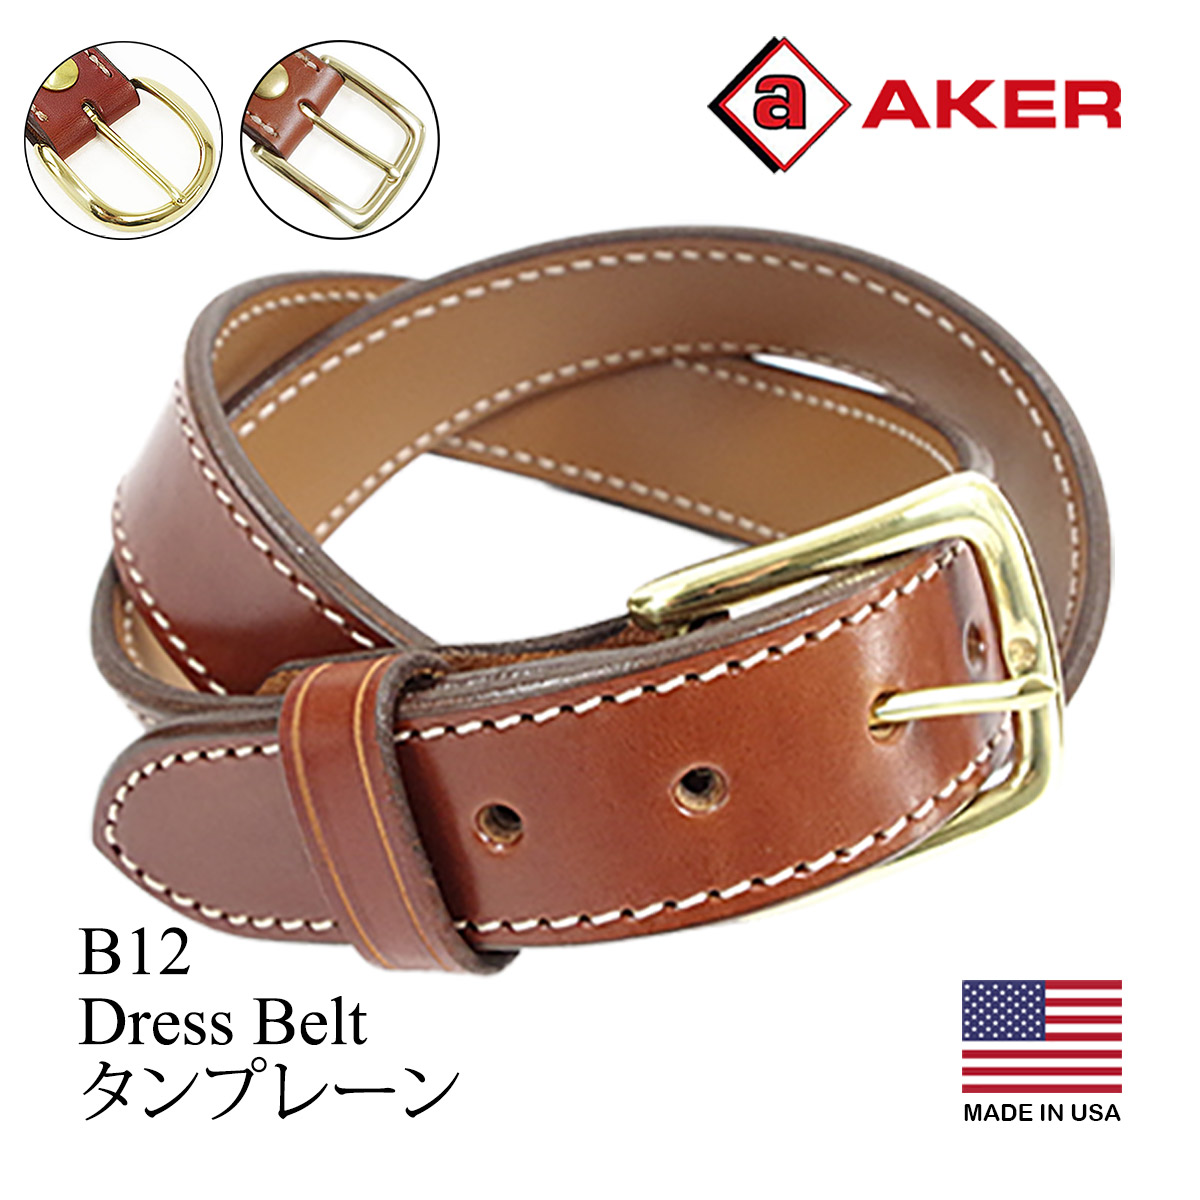 エイカー AKER B12 ドレスベルト MADE IN USA DRESS BELT アメリカ製 米国製 レザーベルト 革ベルト バックル